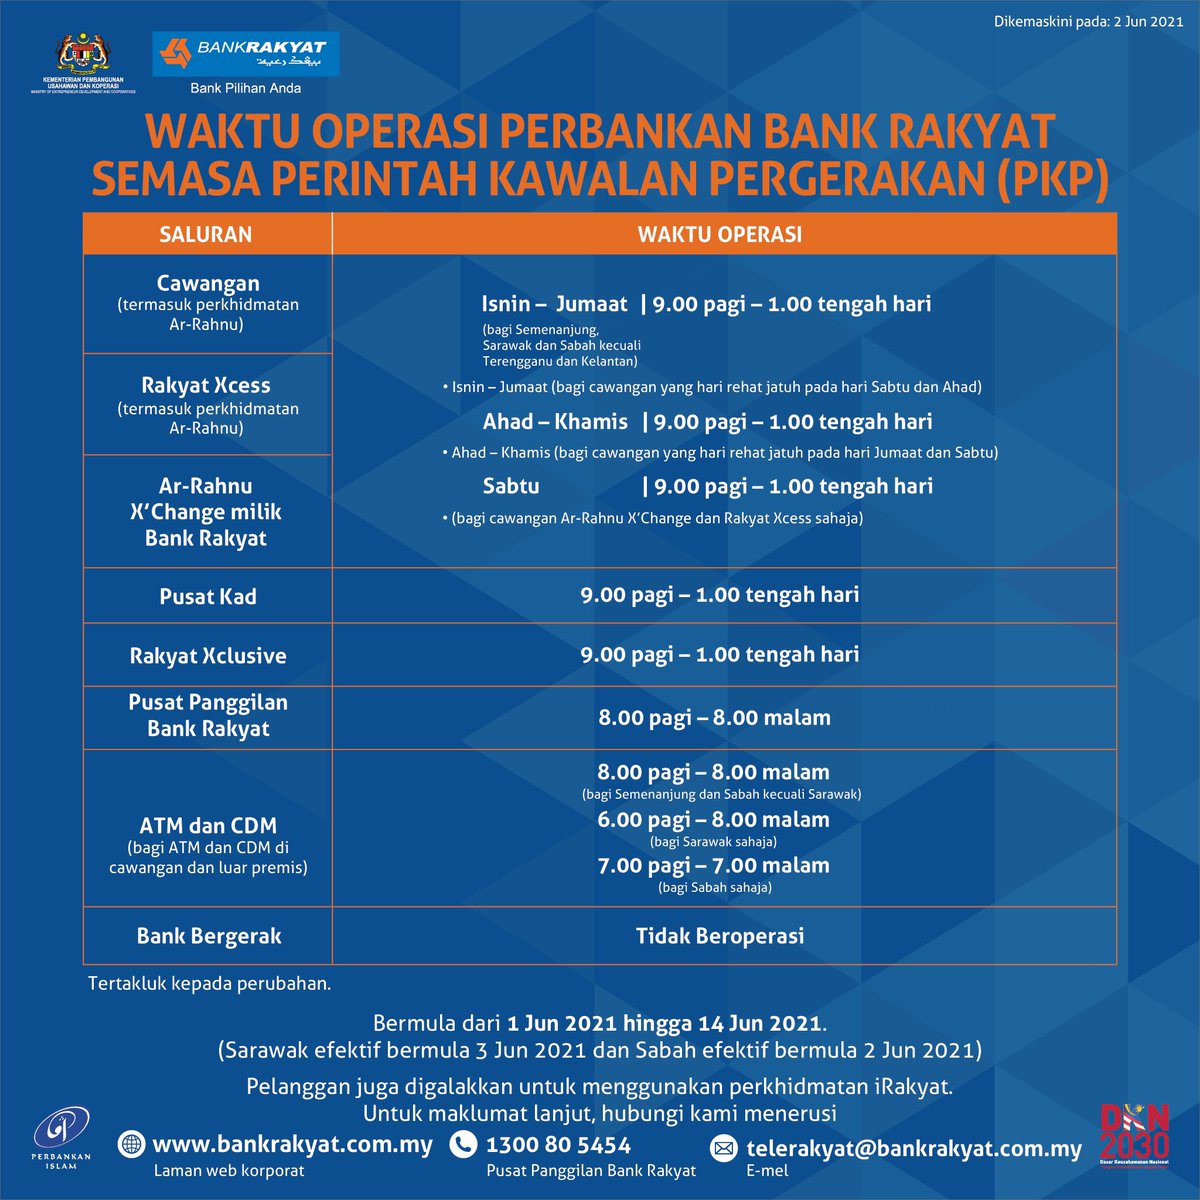 Bank rakyat appointment